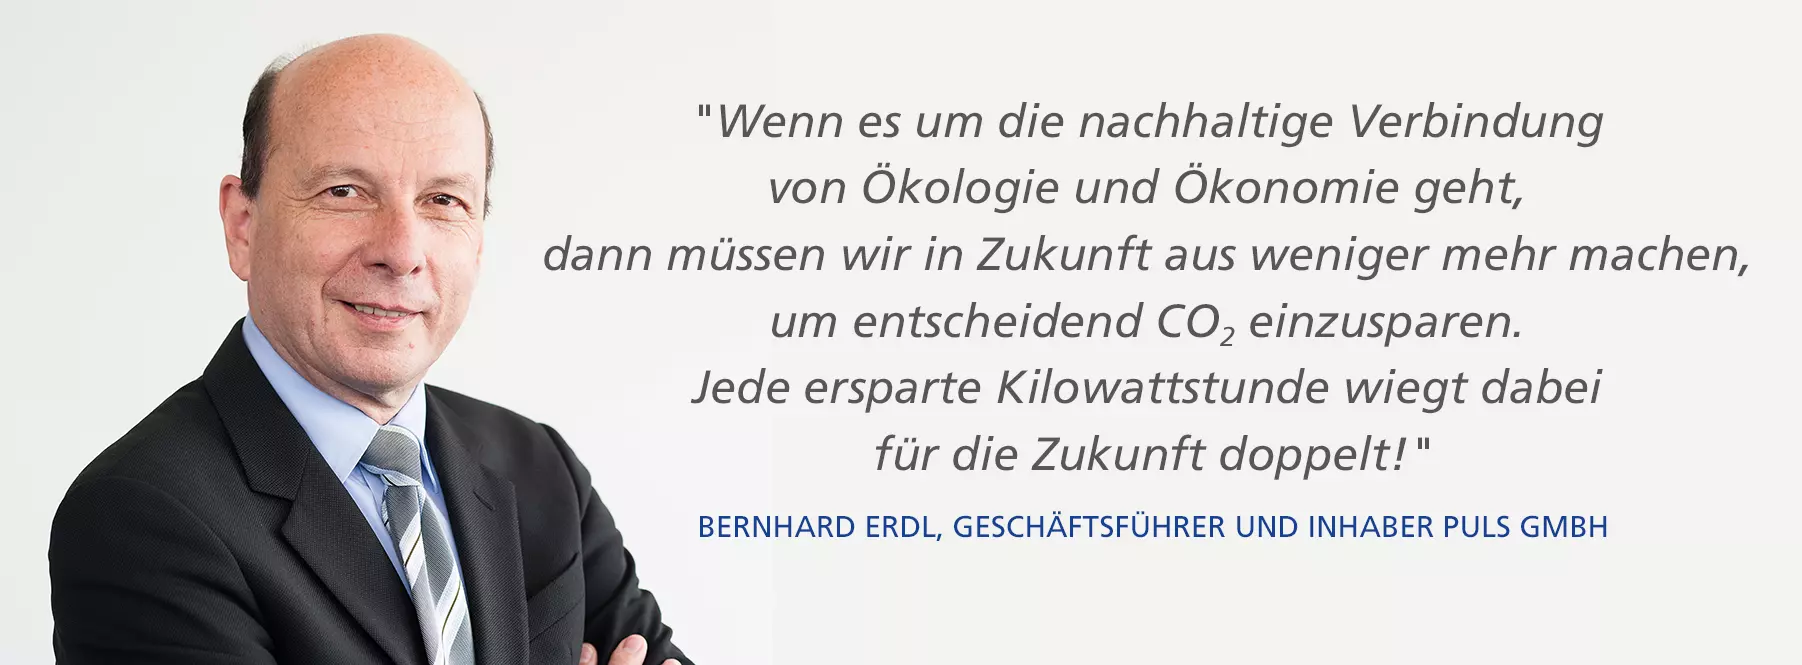 Bernhard Erdl, Geschäftsführer und Inhaber der PULS GmbH, zum Thema CO2-Reduktion.